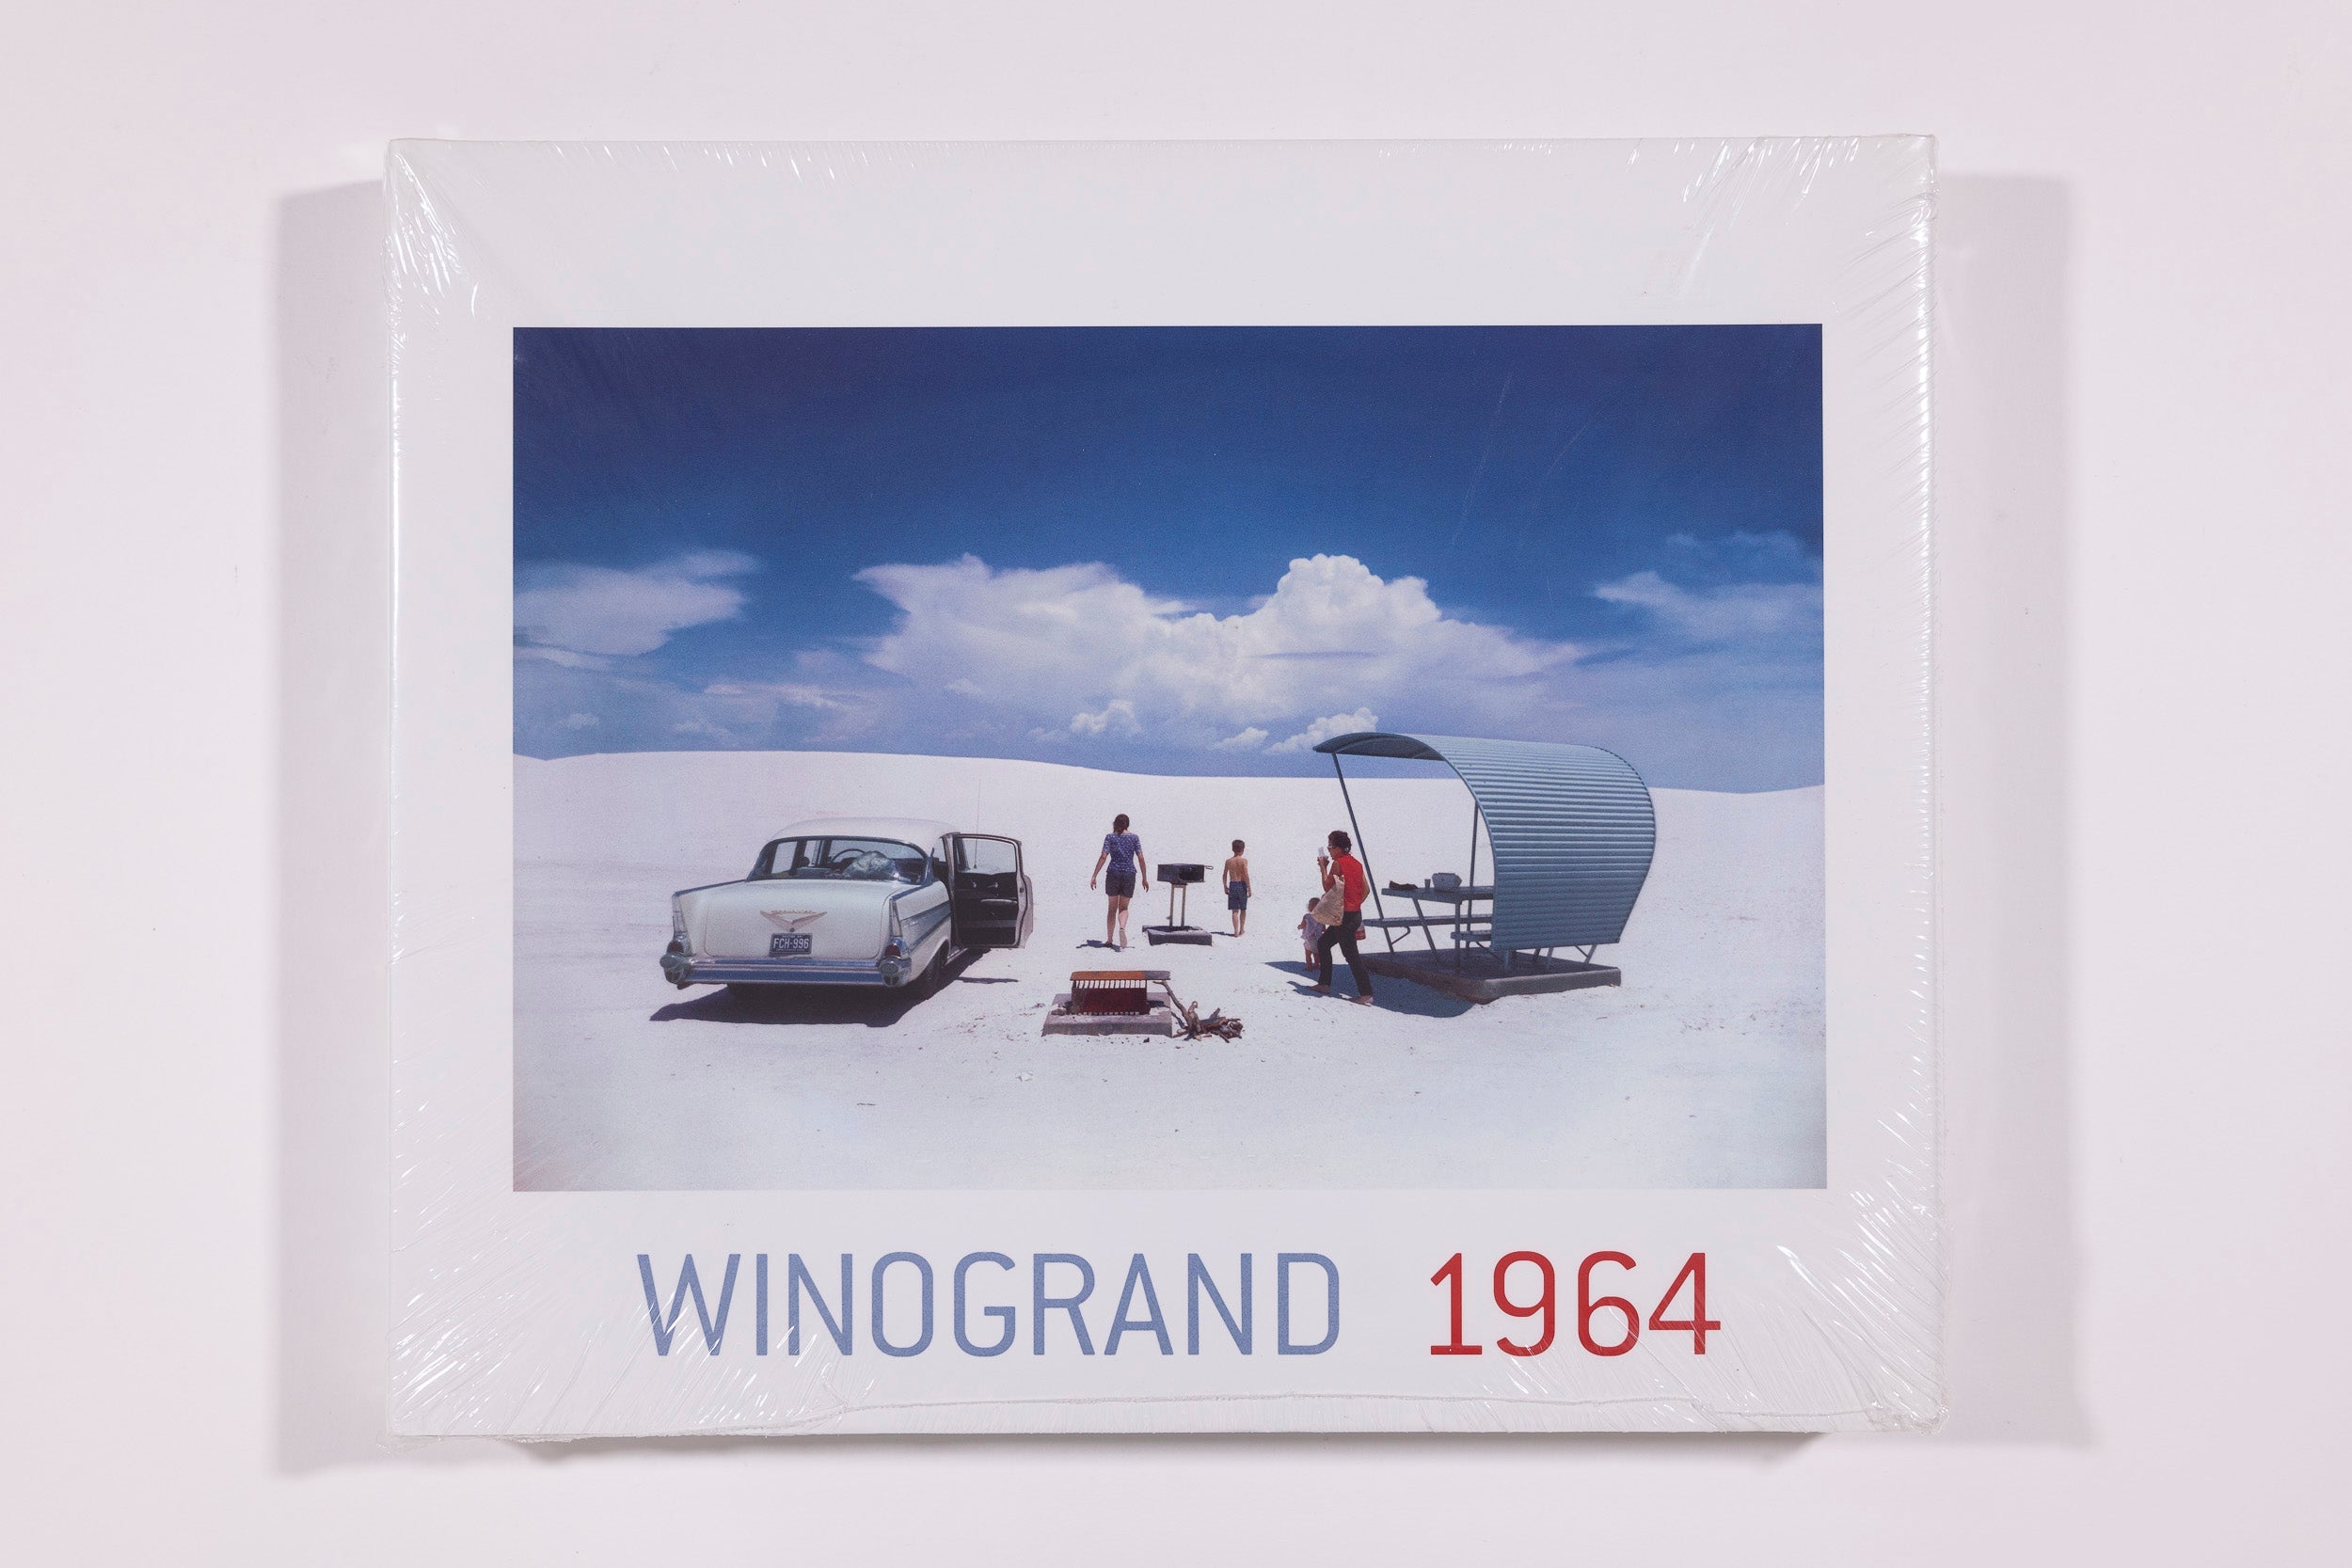 Winogrand 1964 - Garry Winogrand